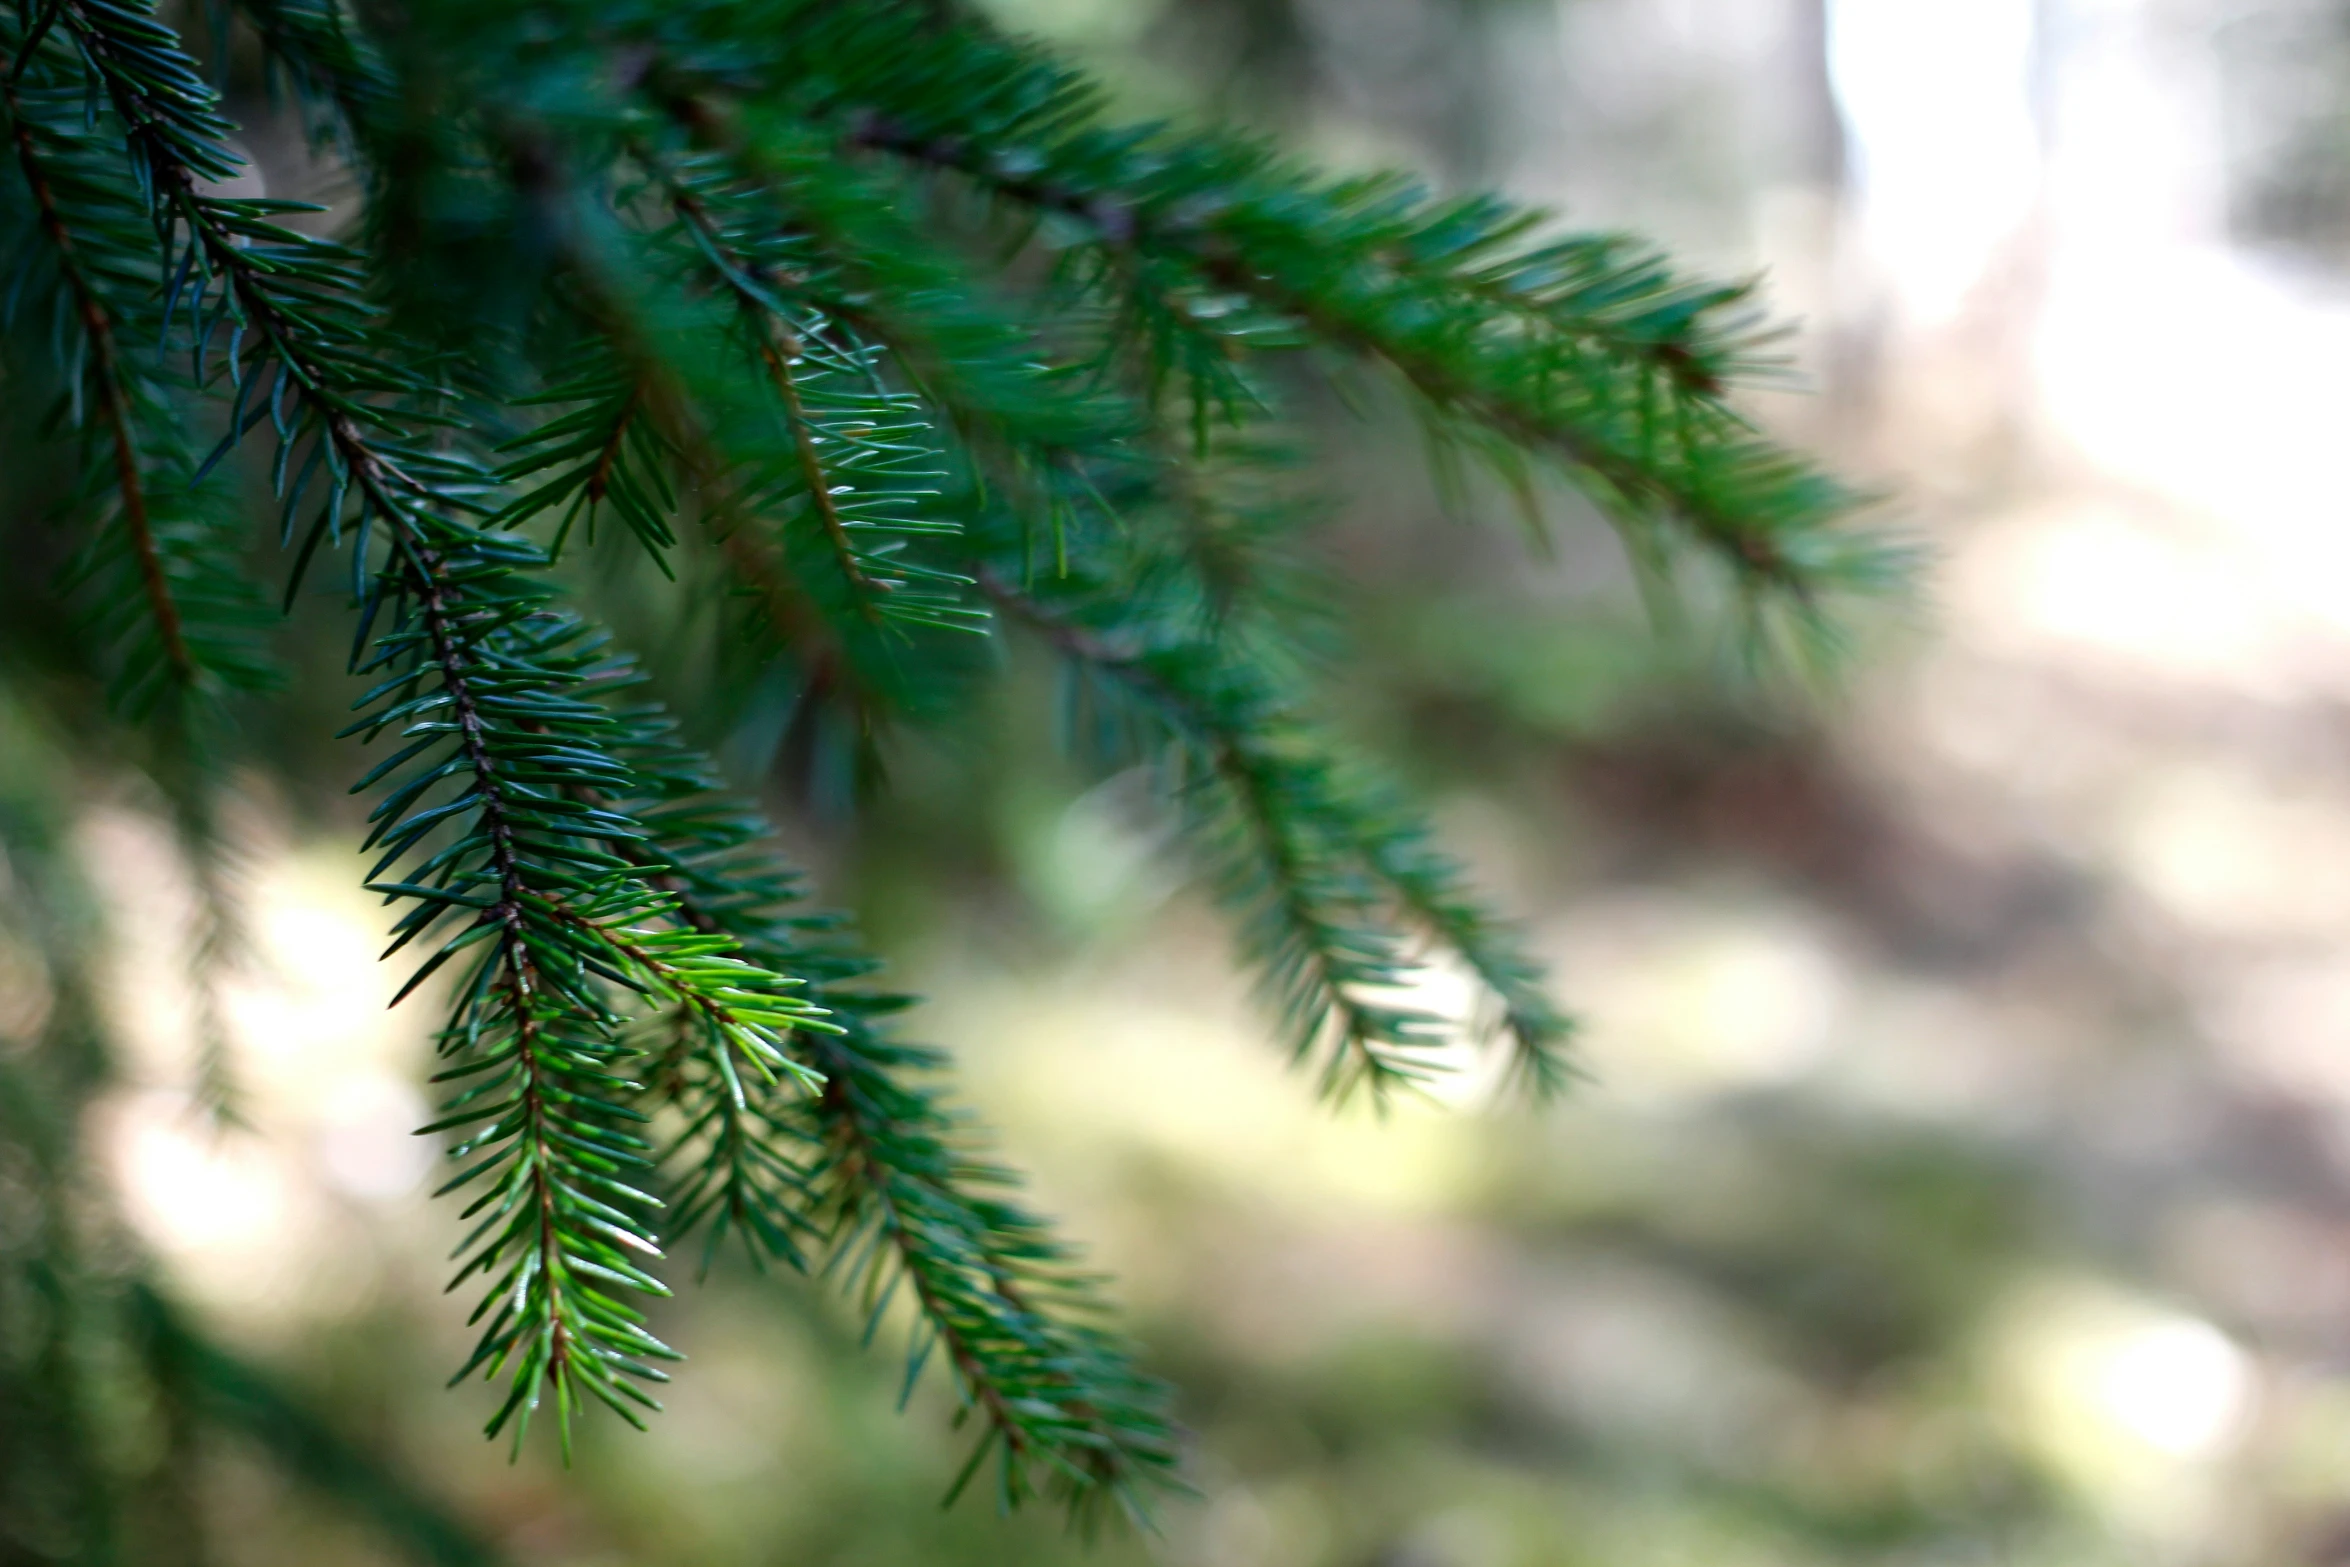 a close up of a nch of a fir tree